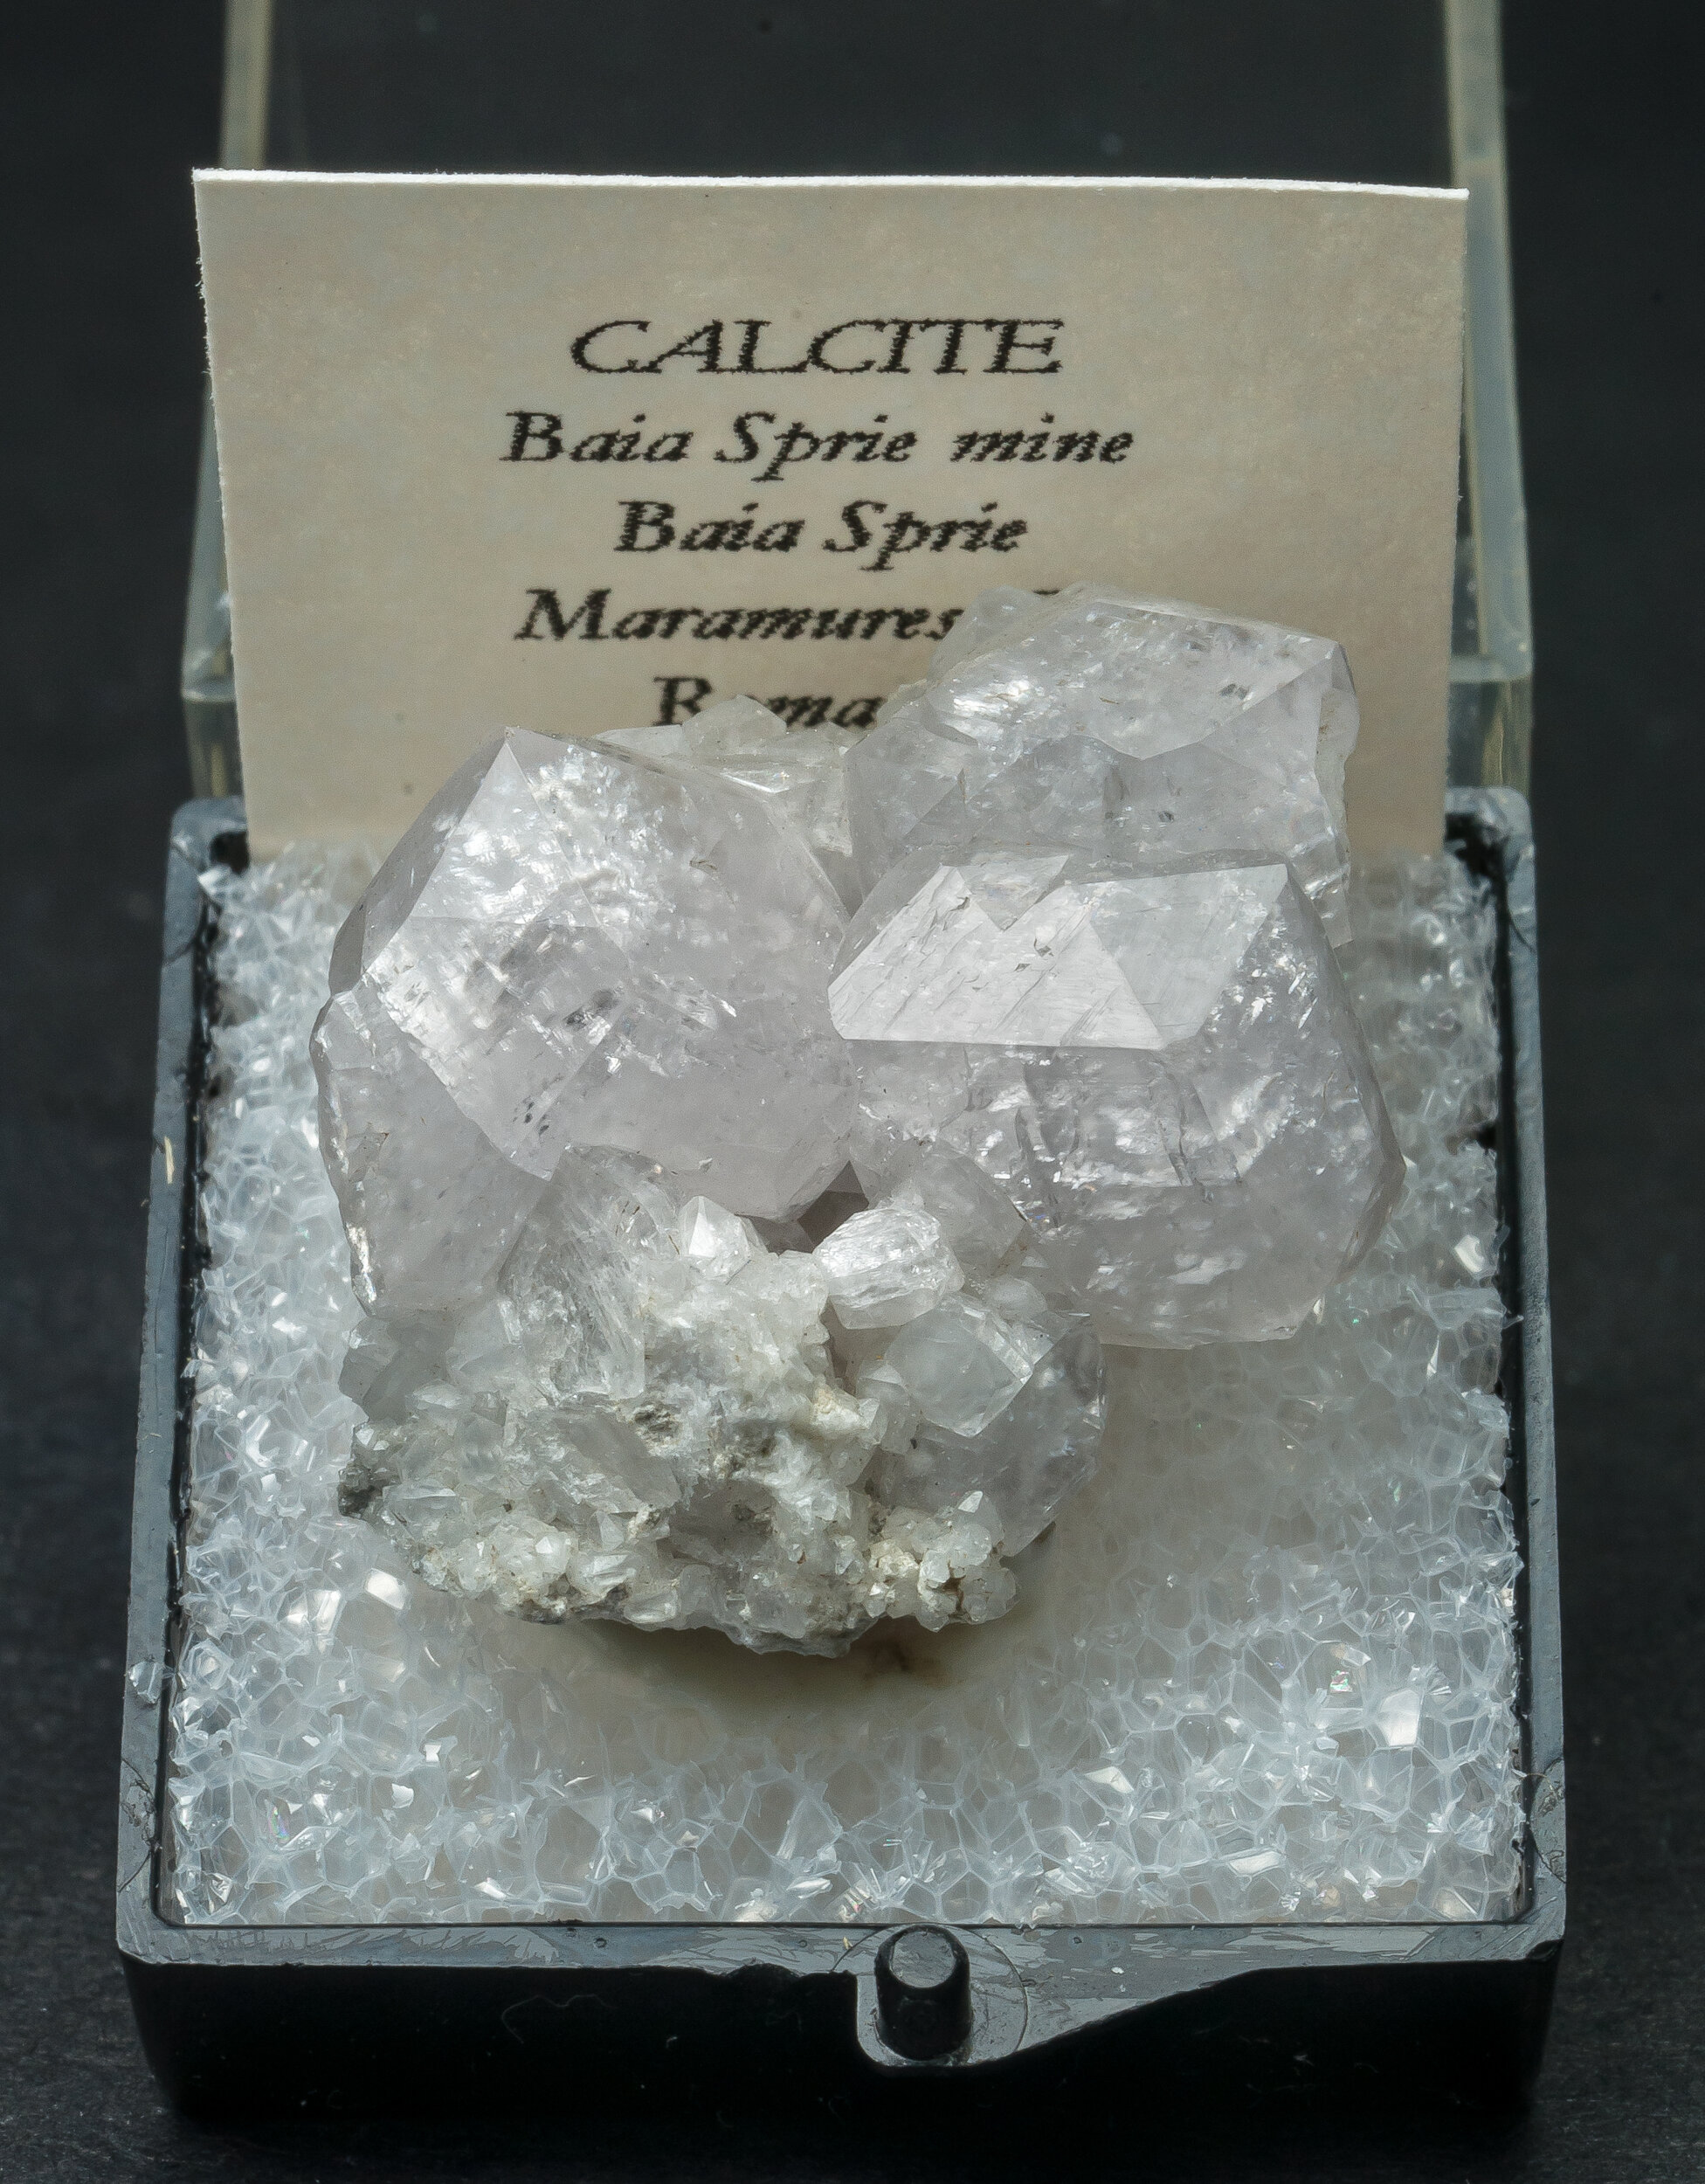 specimens/s_imagesAO3/Calcite-TAP14AO3f1.jpg